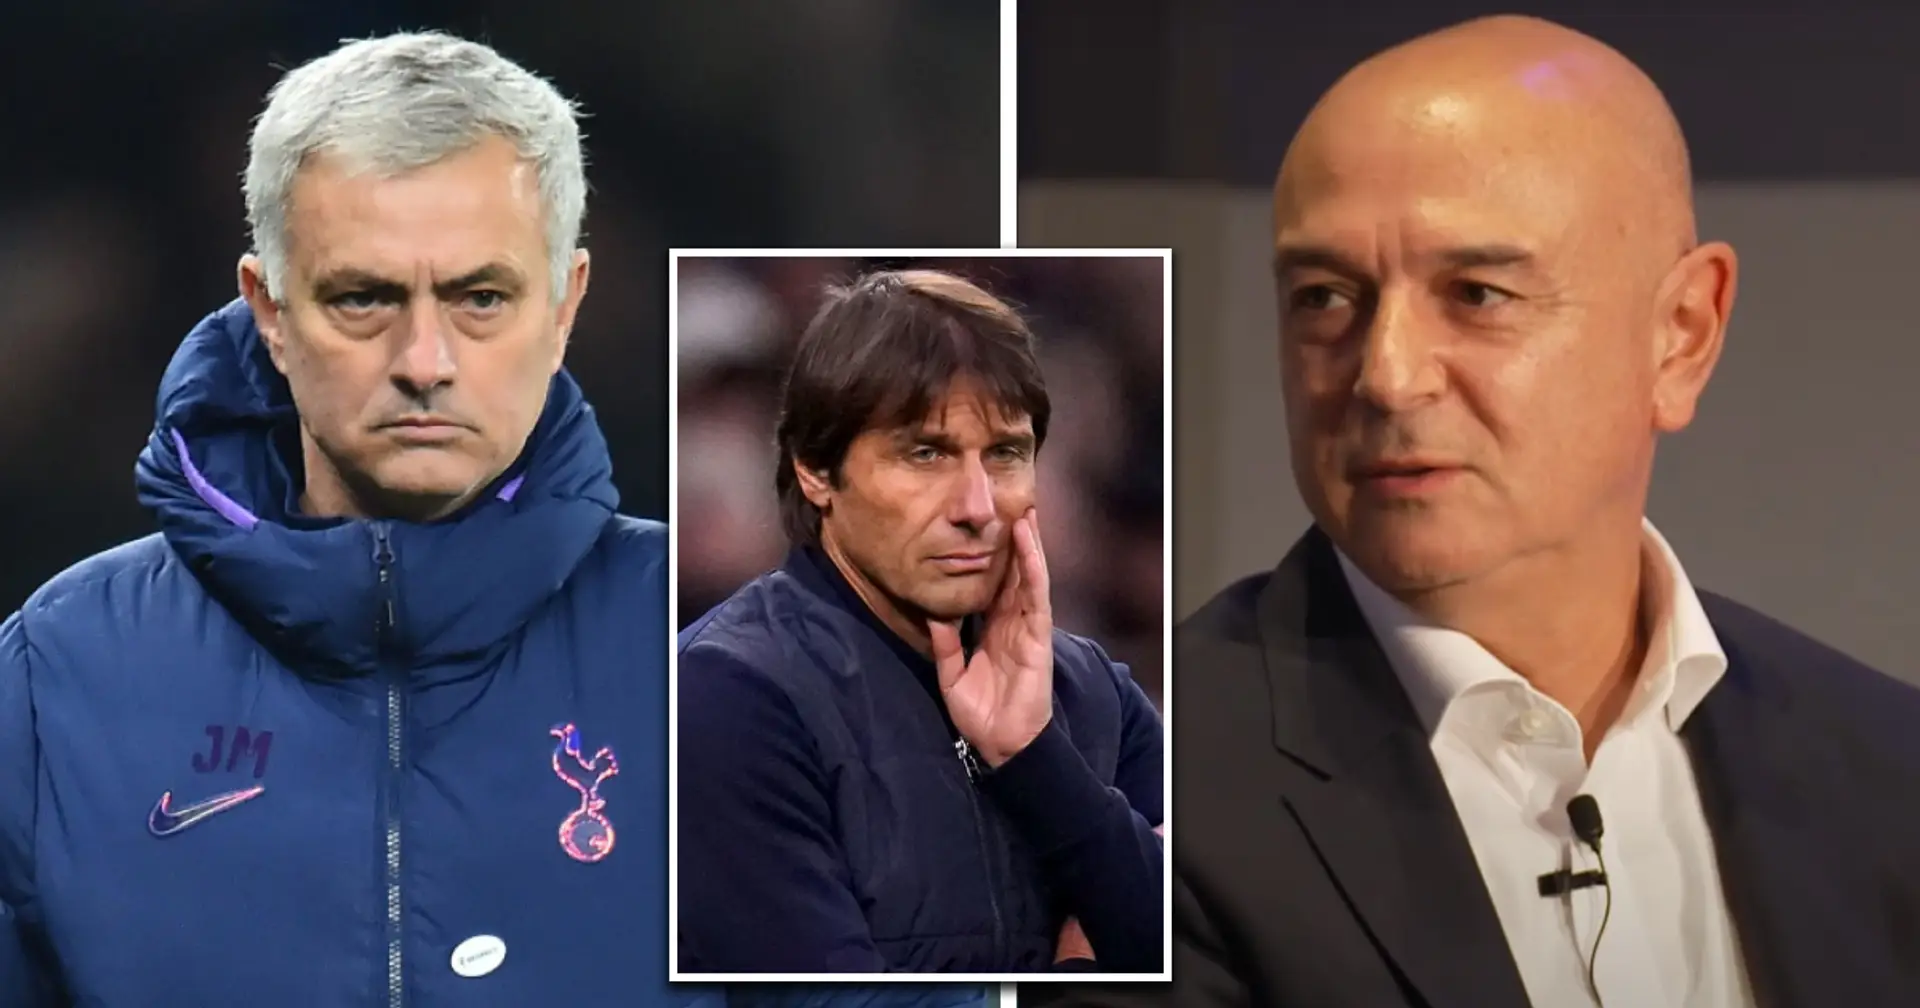 "J'ai fait une erreur": Daniel Levy, président de Tottenham, sur l'embauche de Jose Mourinho et Antonio Conte